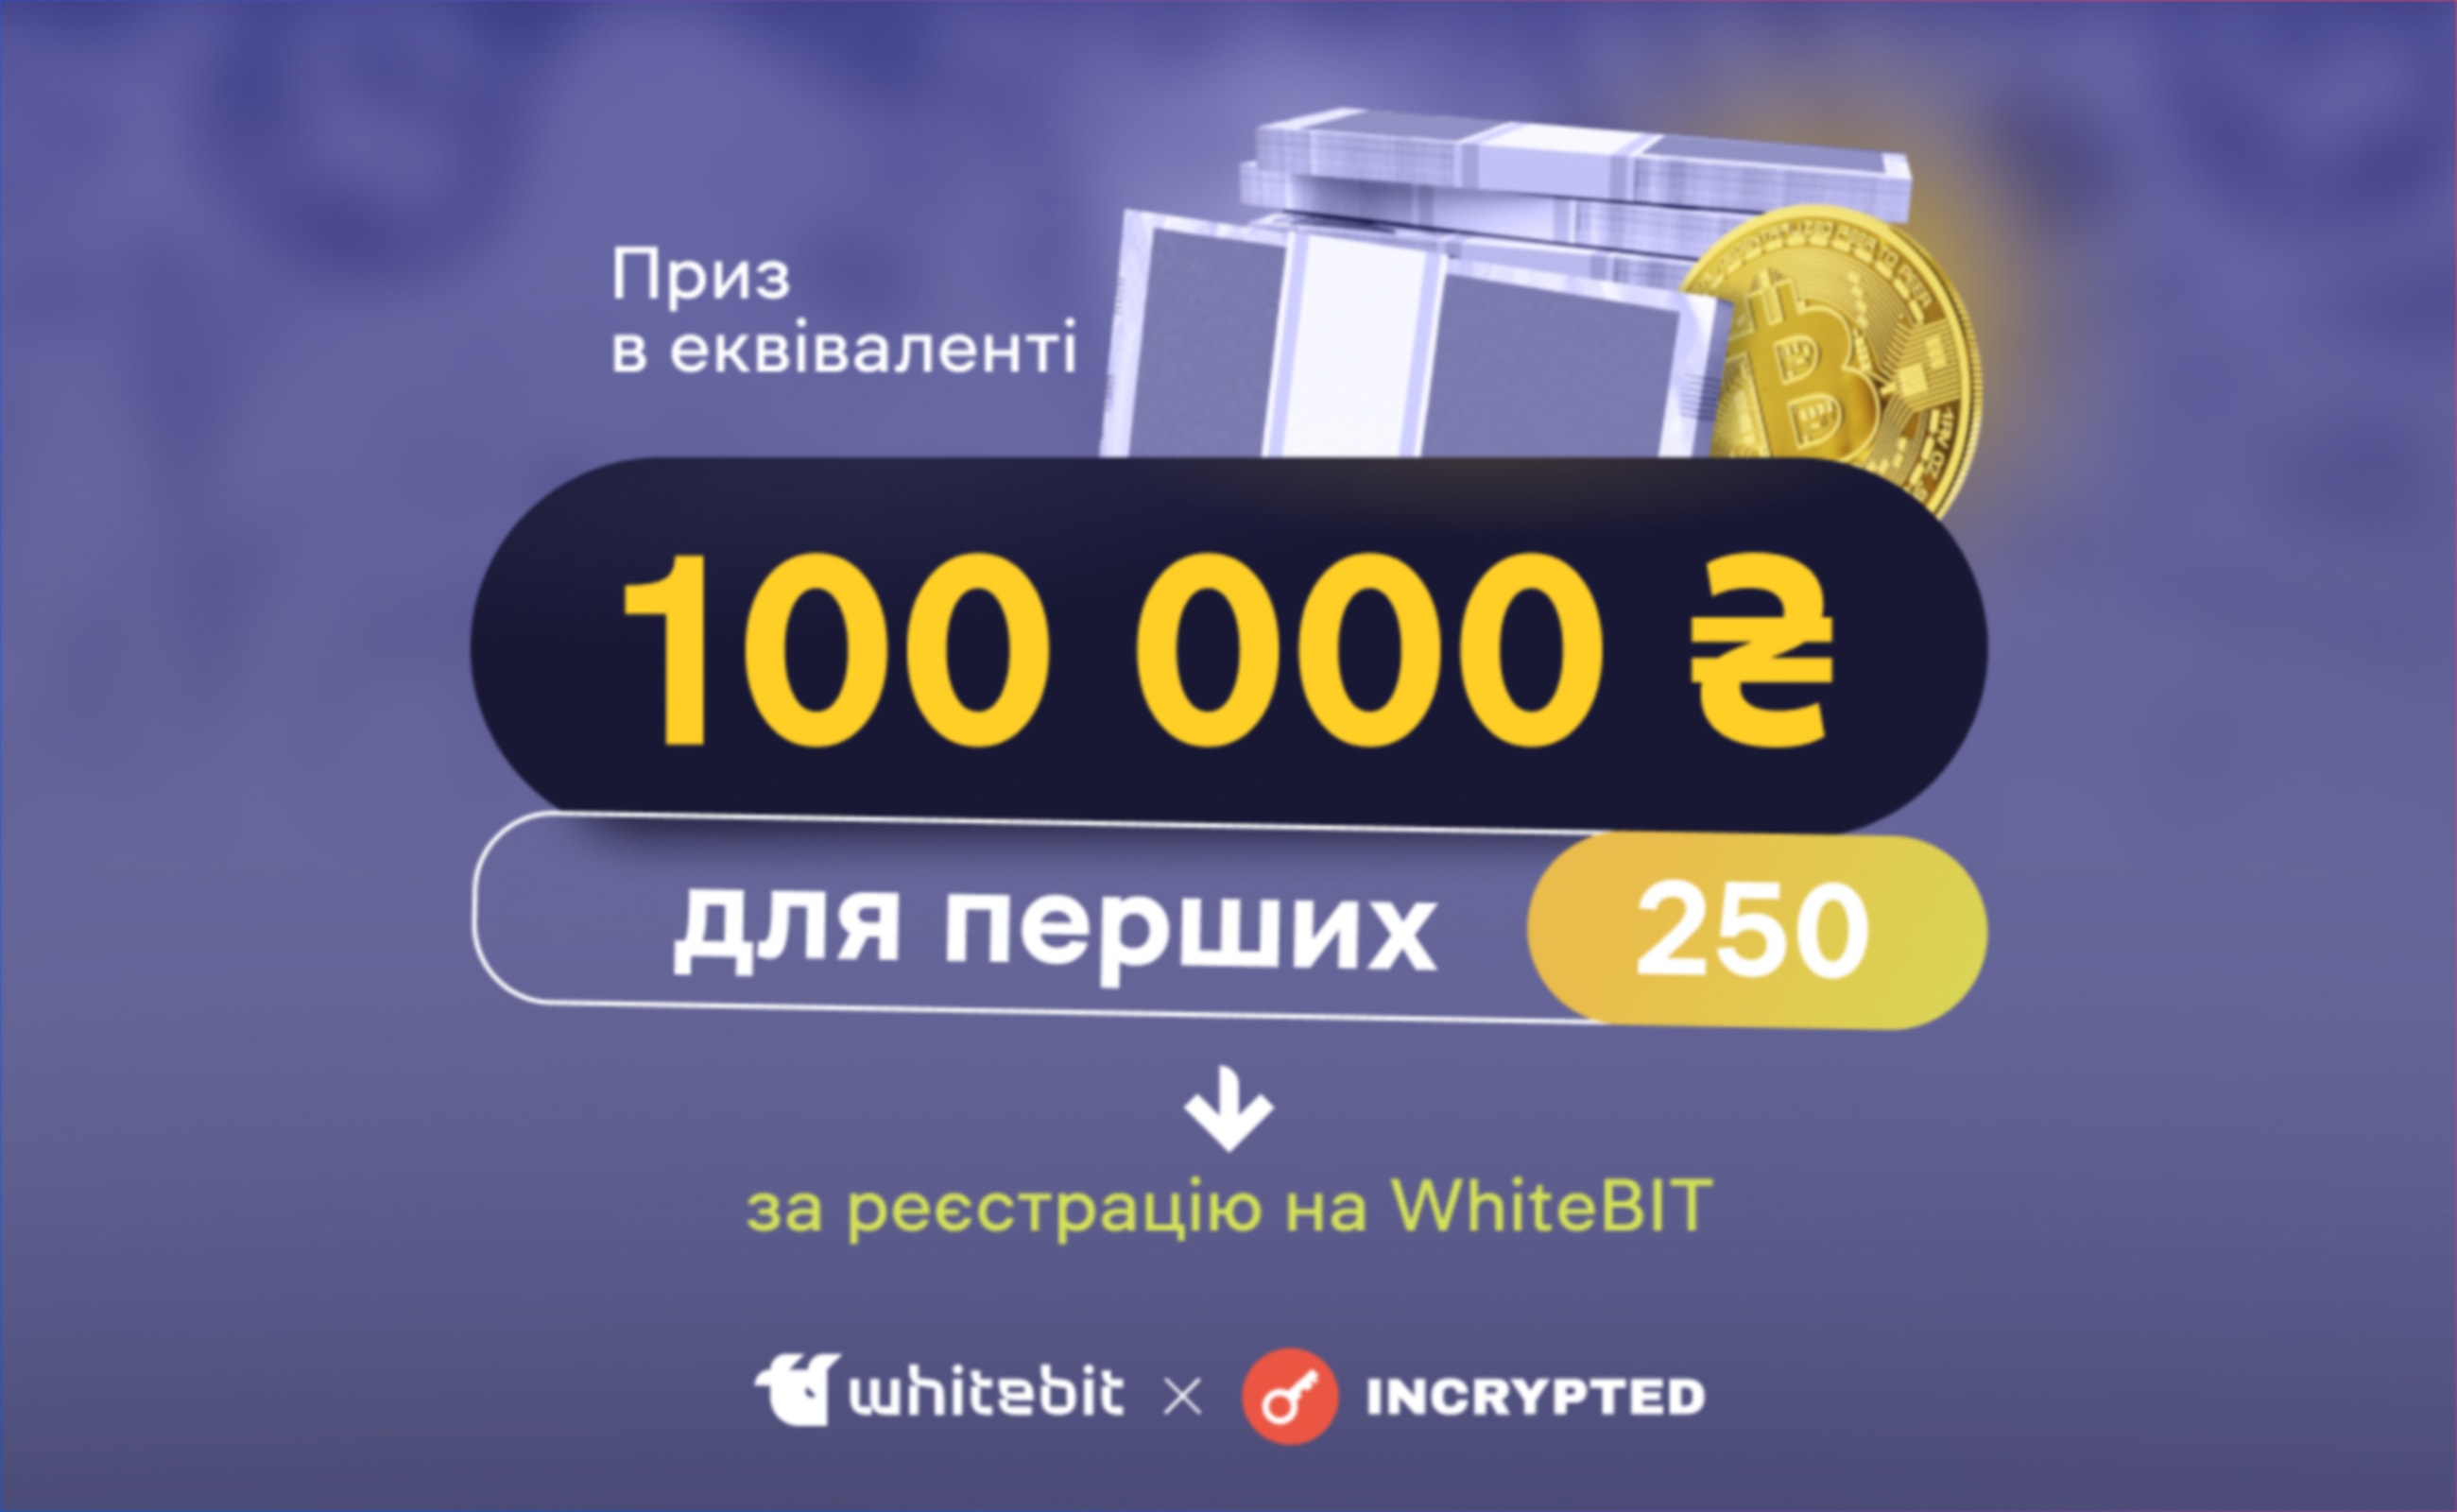 WhiteBIT и Incrypted разыграют приз в эквиваленте 100 000 гривен среди новых пользователей. Заглавный коллаж статьи.